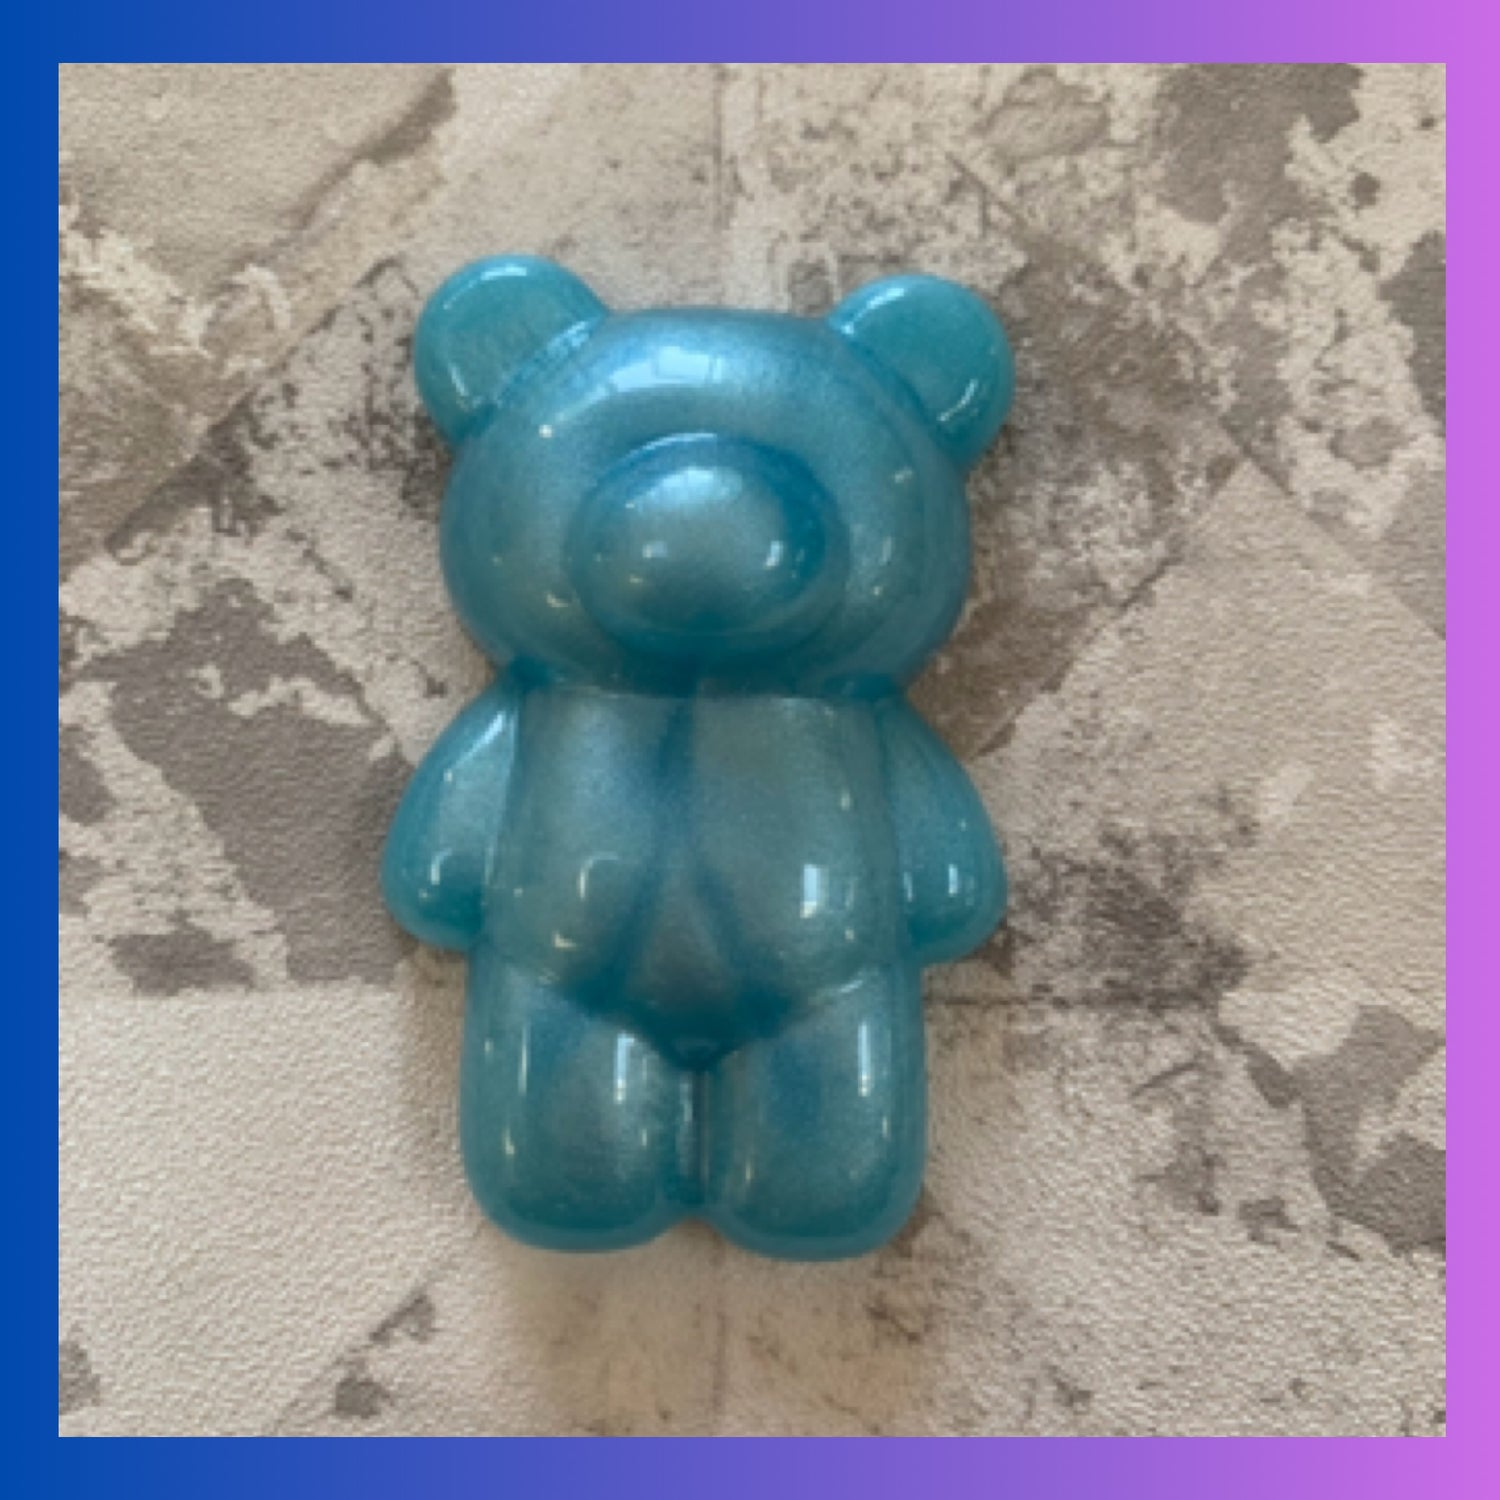 bear-fridge-magnets